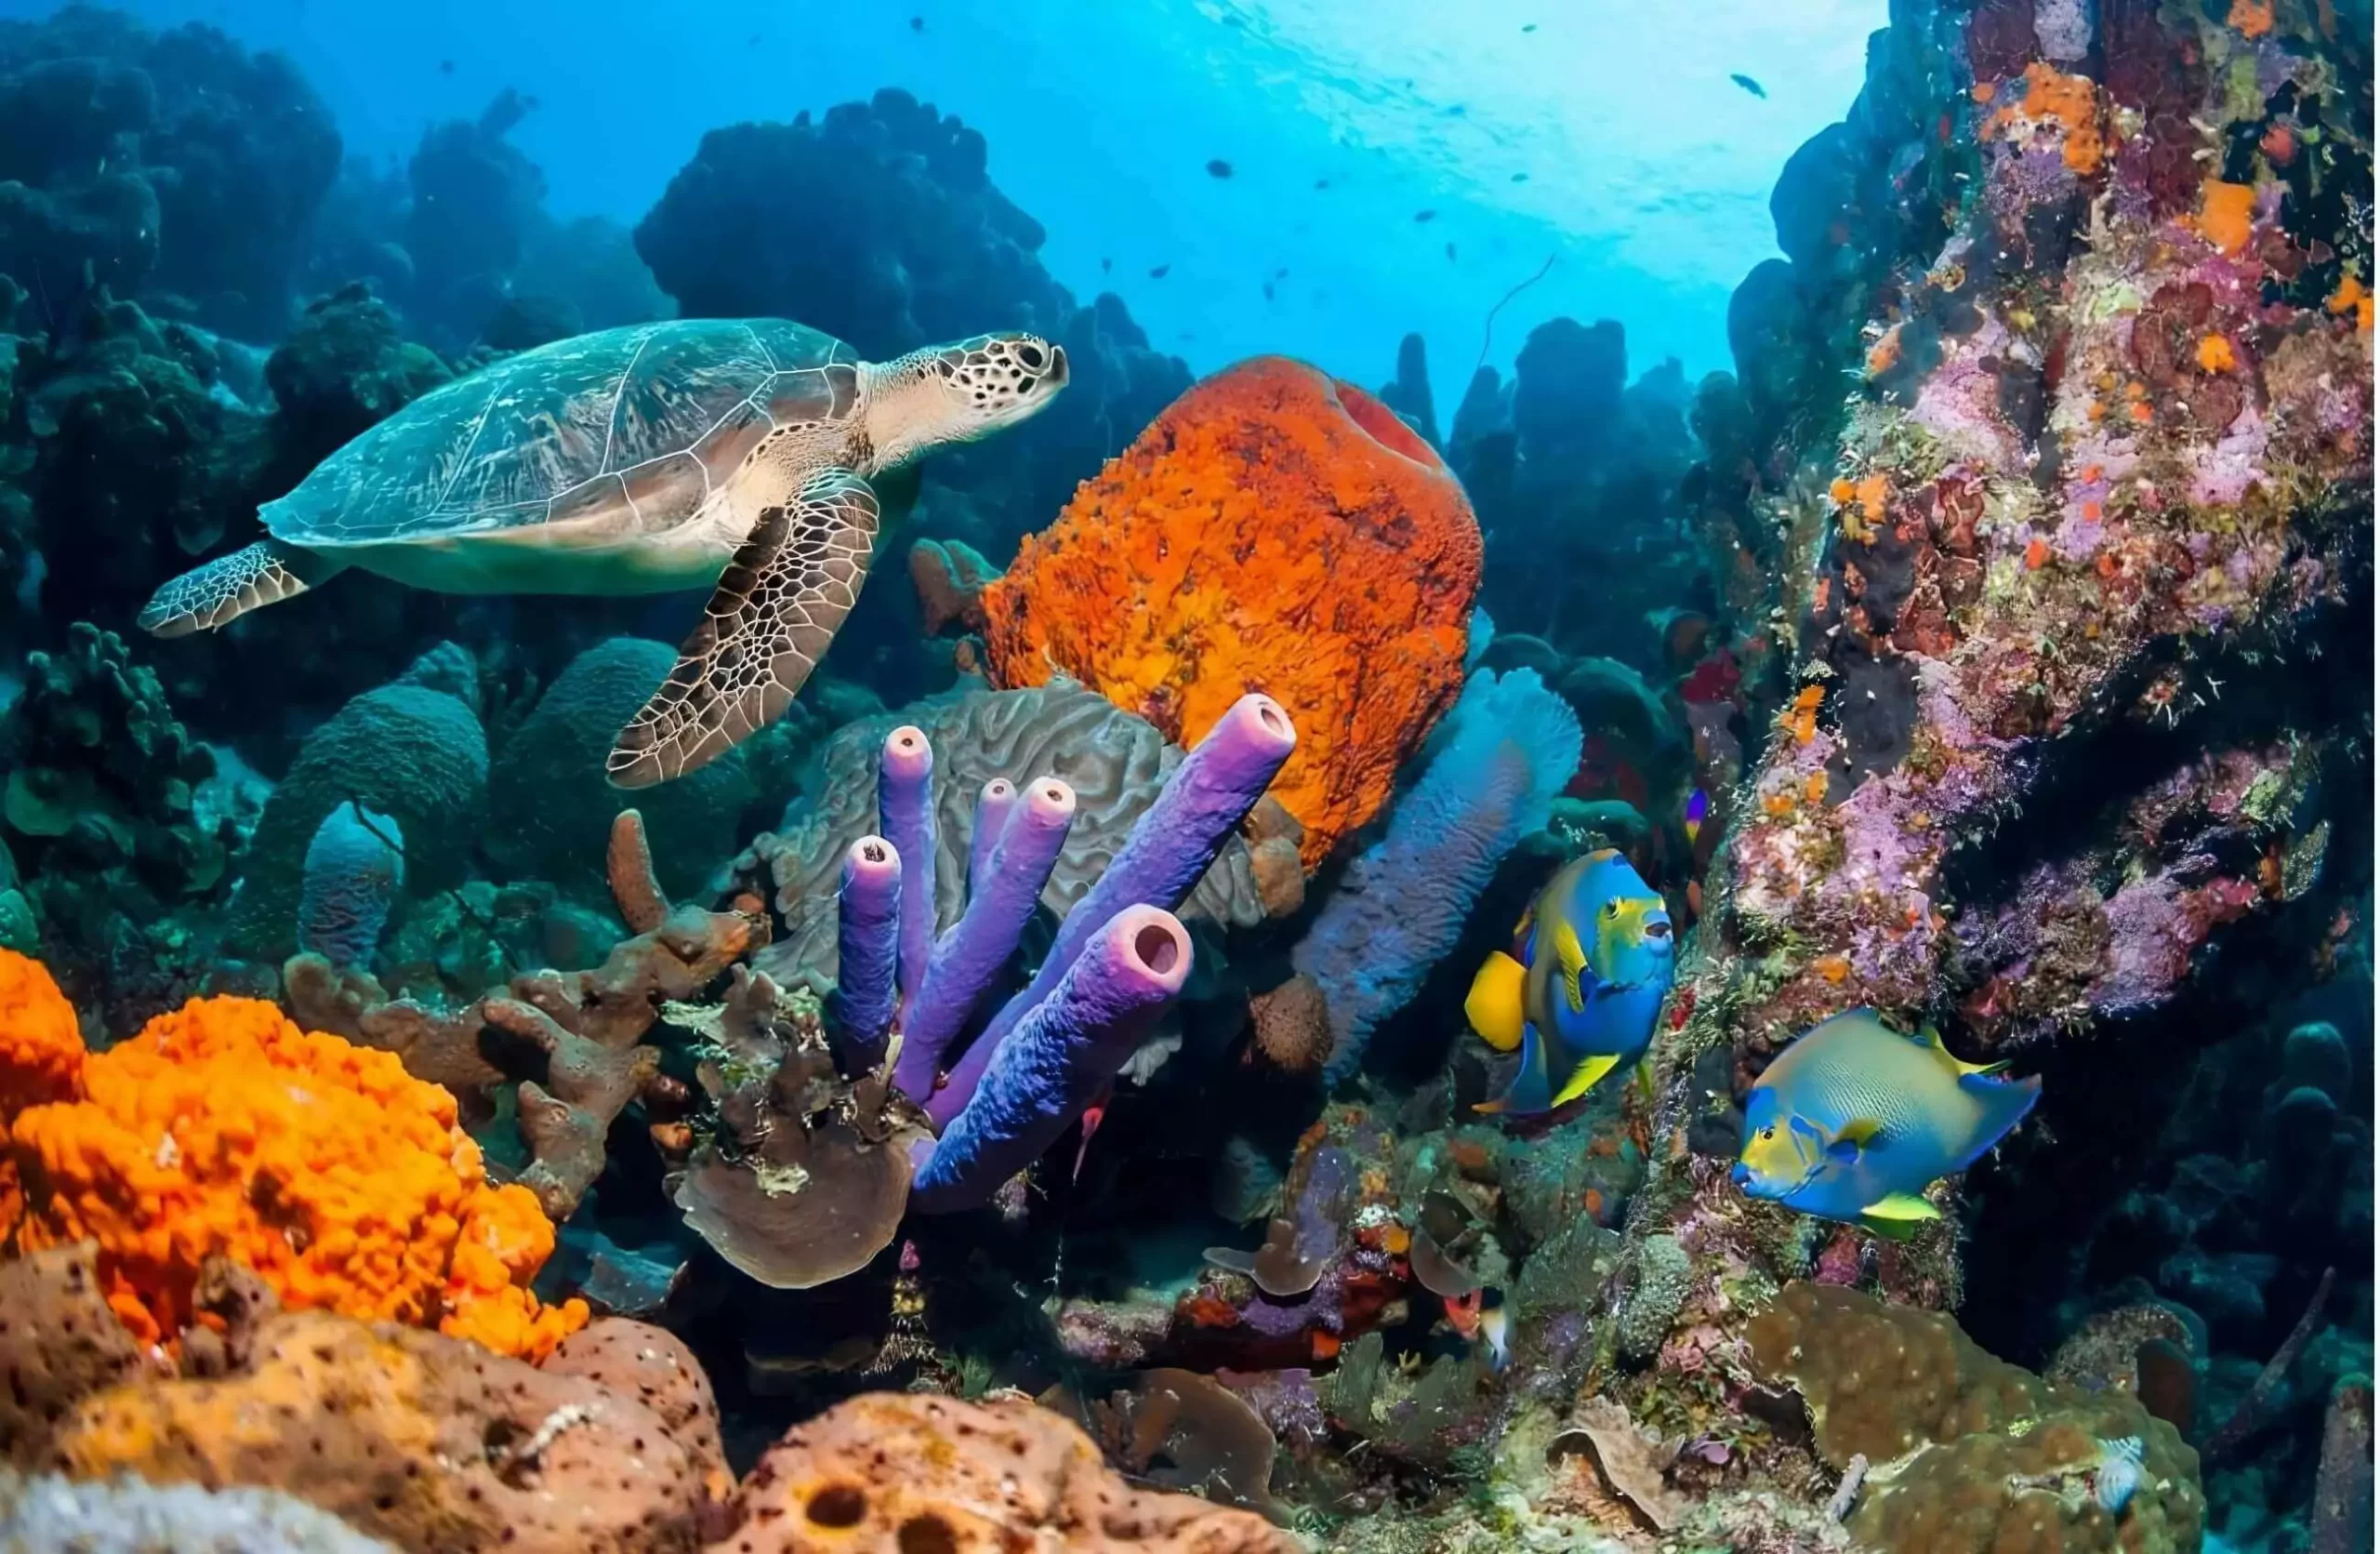 Broastele testoase de mare din insula secreta Bonaire scaled